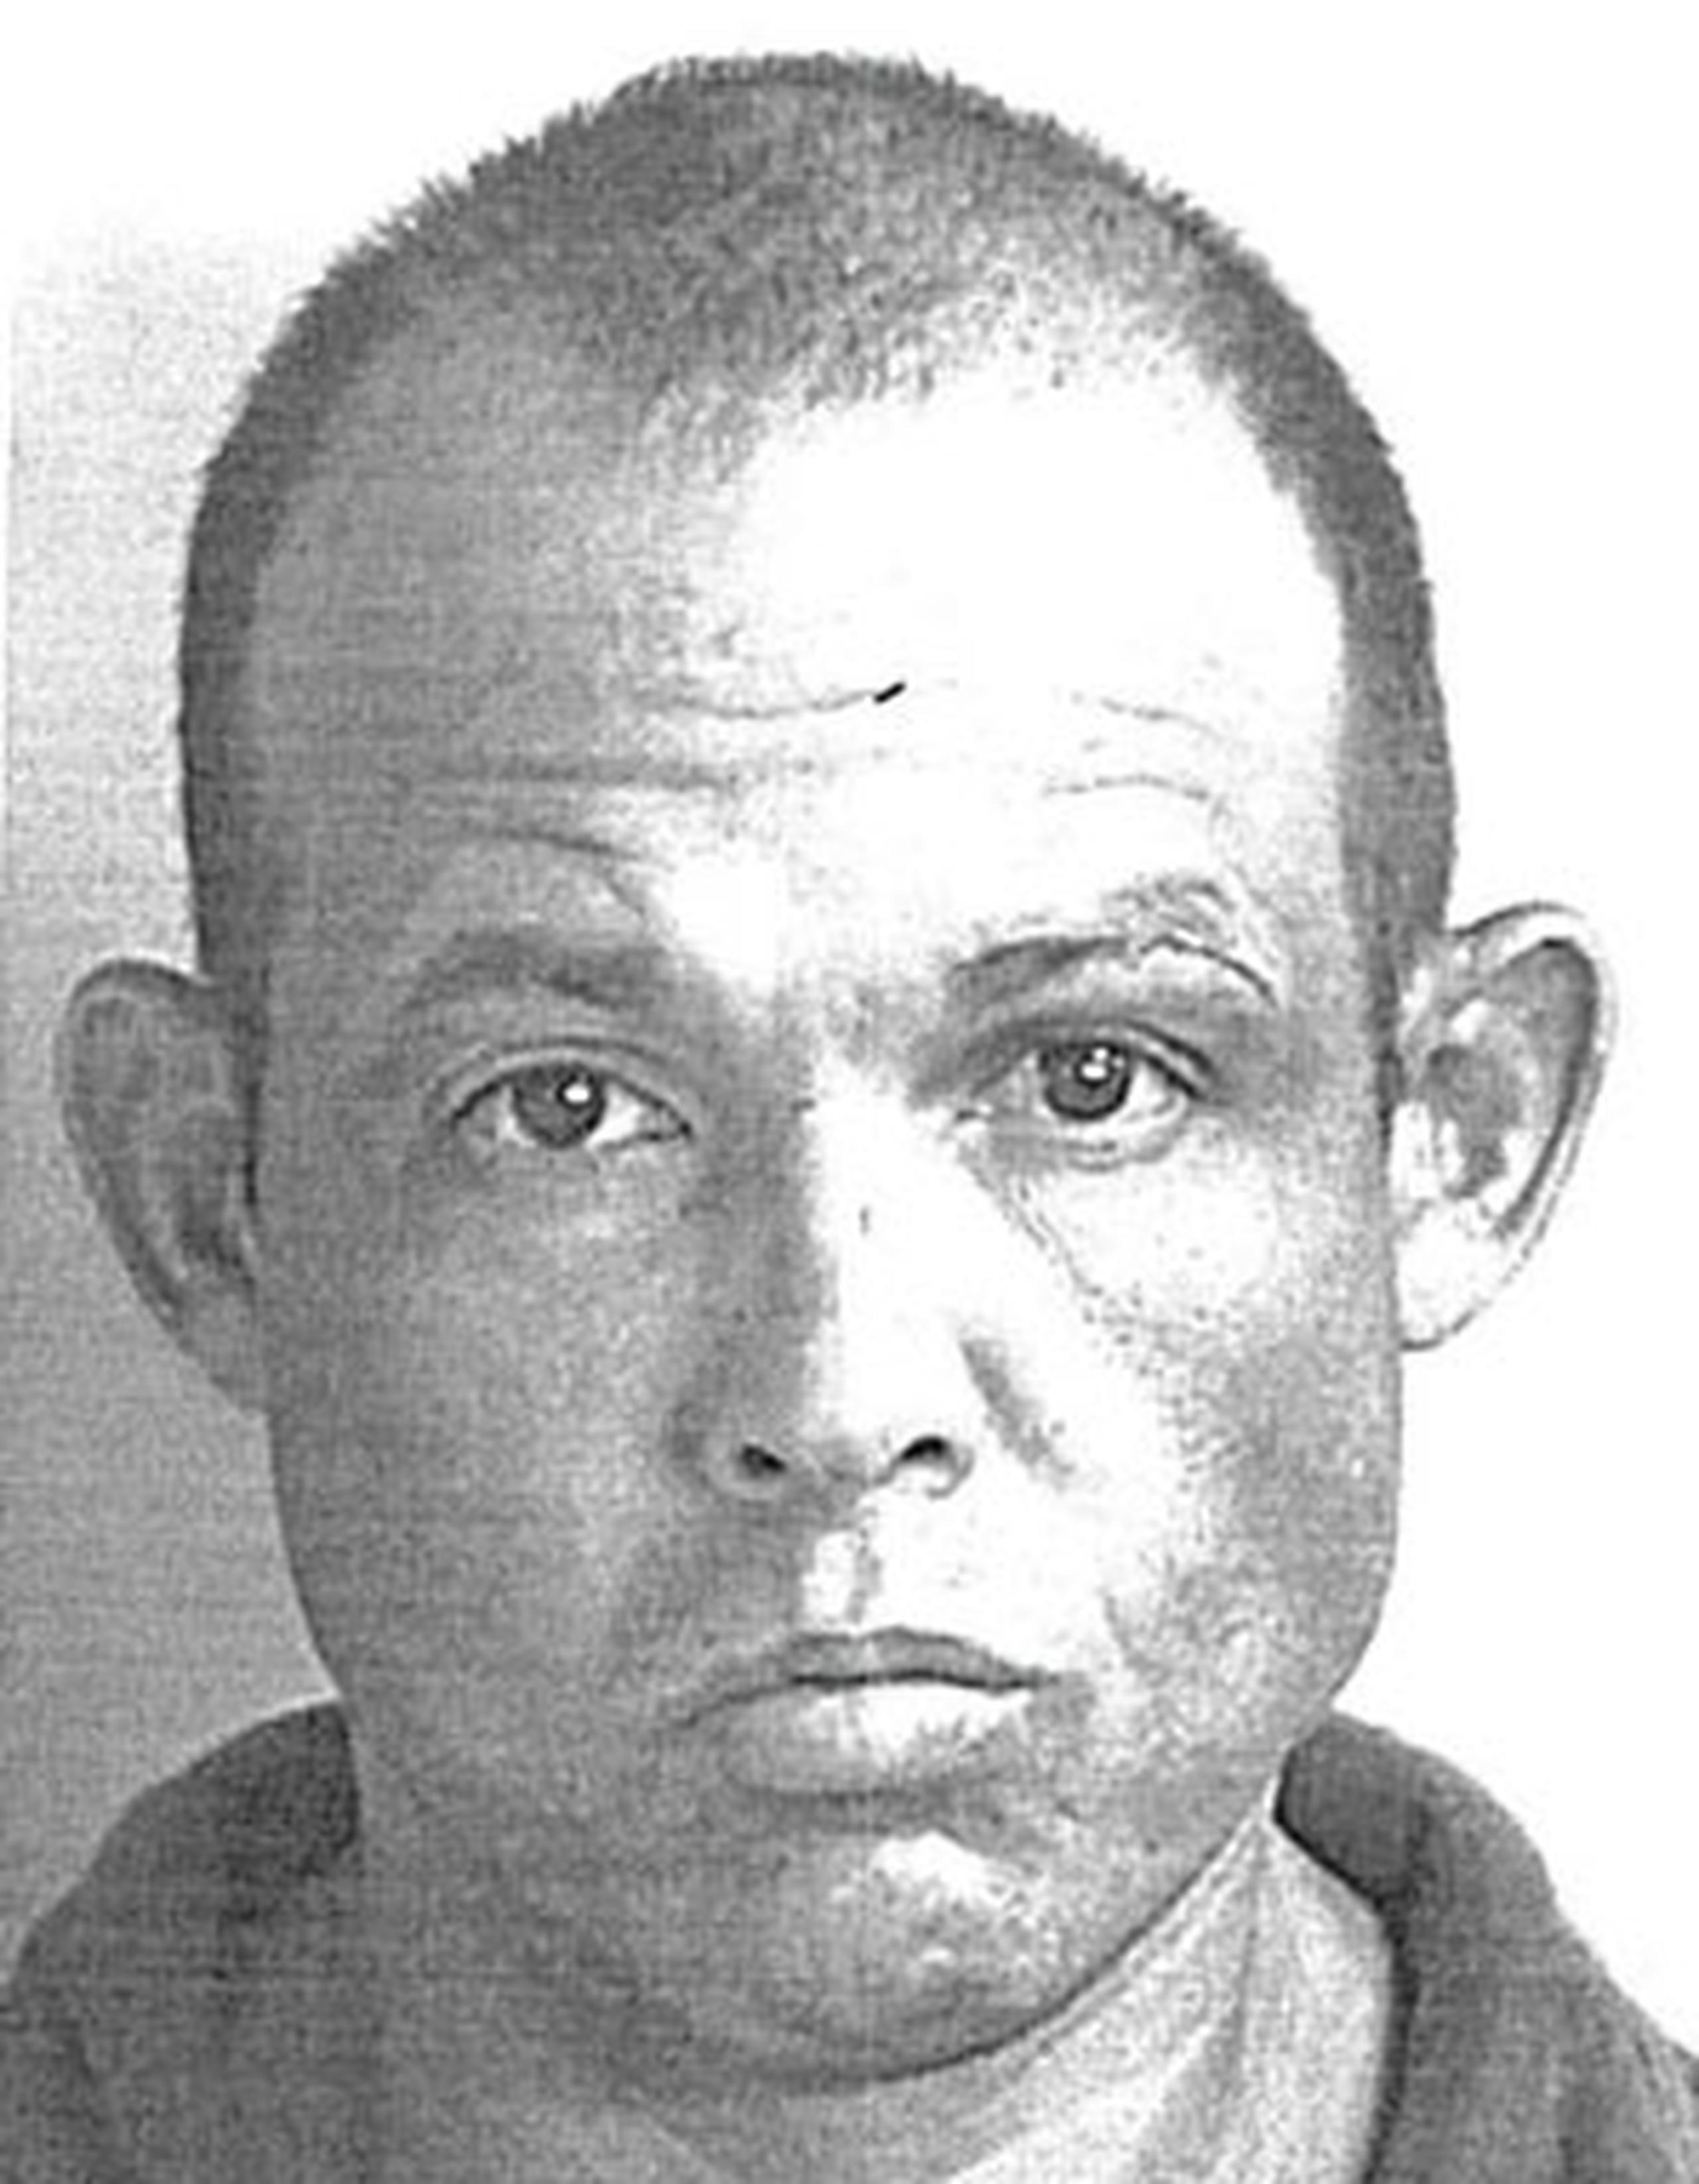 La Policía identificó al imputado como Carlos Colón Otero, de 37 años y residente en Morovis. (Suministrada)